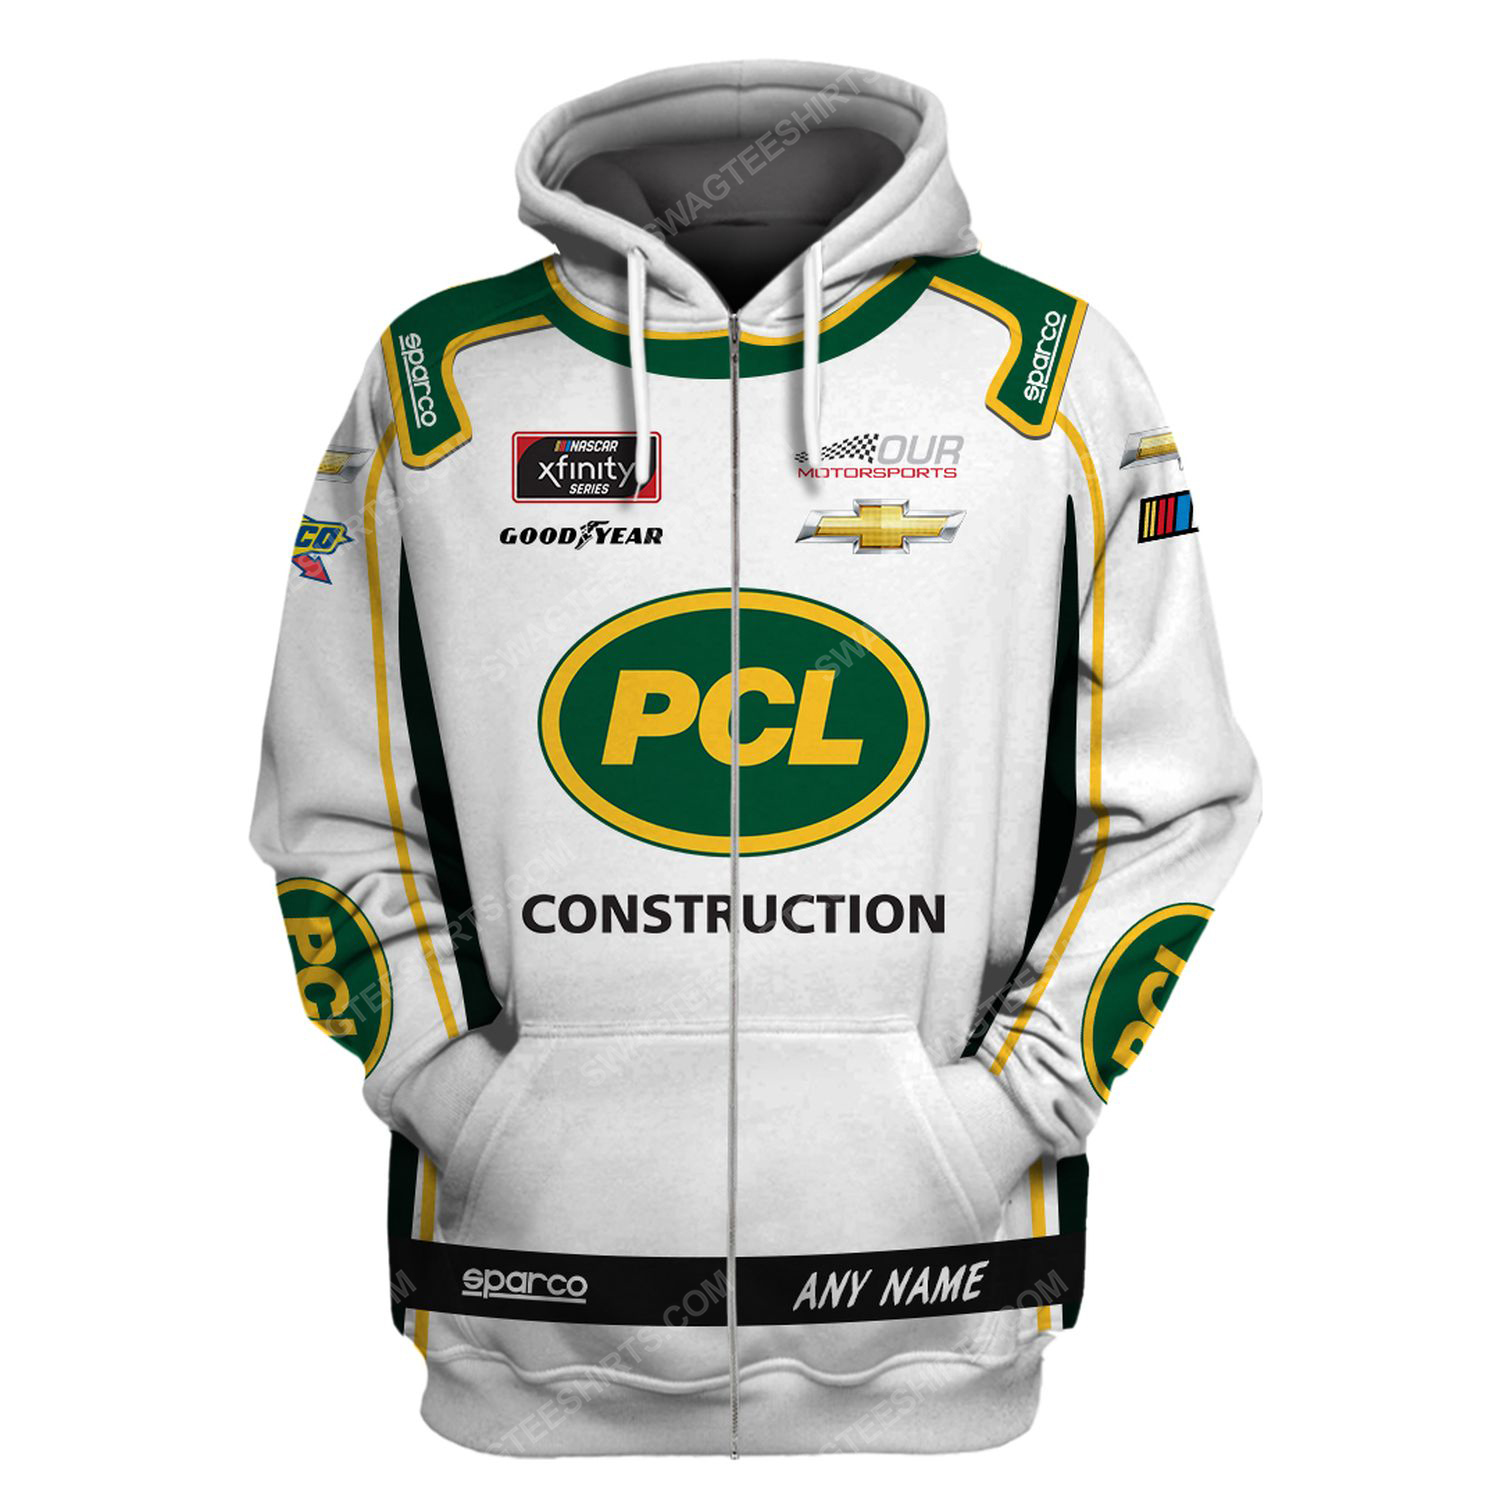 Custom pcl construction racing team motorsport full printing zip hoodie